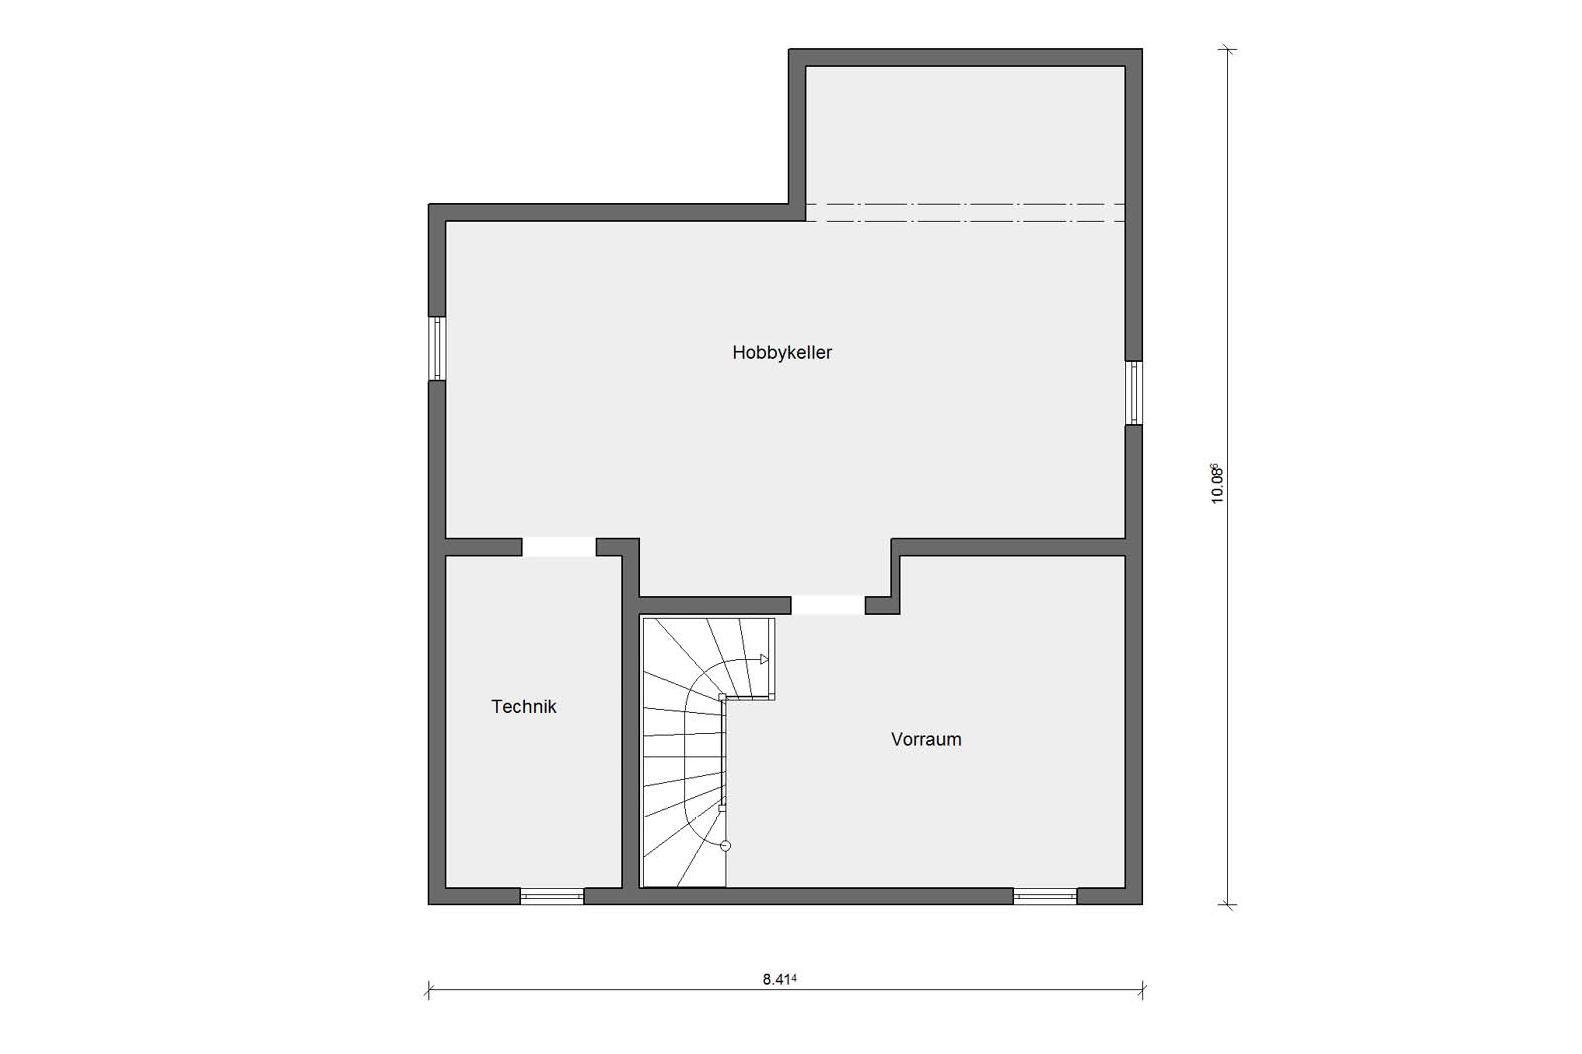 Basement floorplan E 15-126.7 Attractive architecture